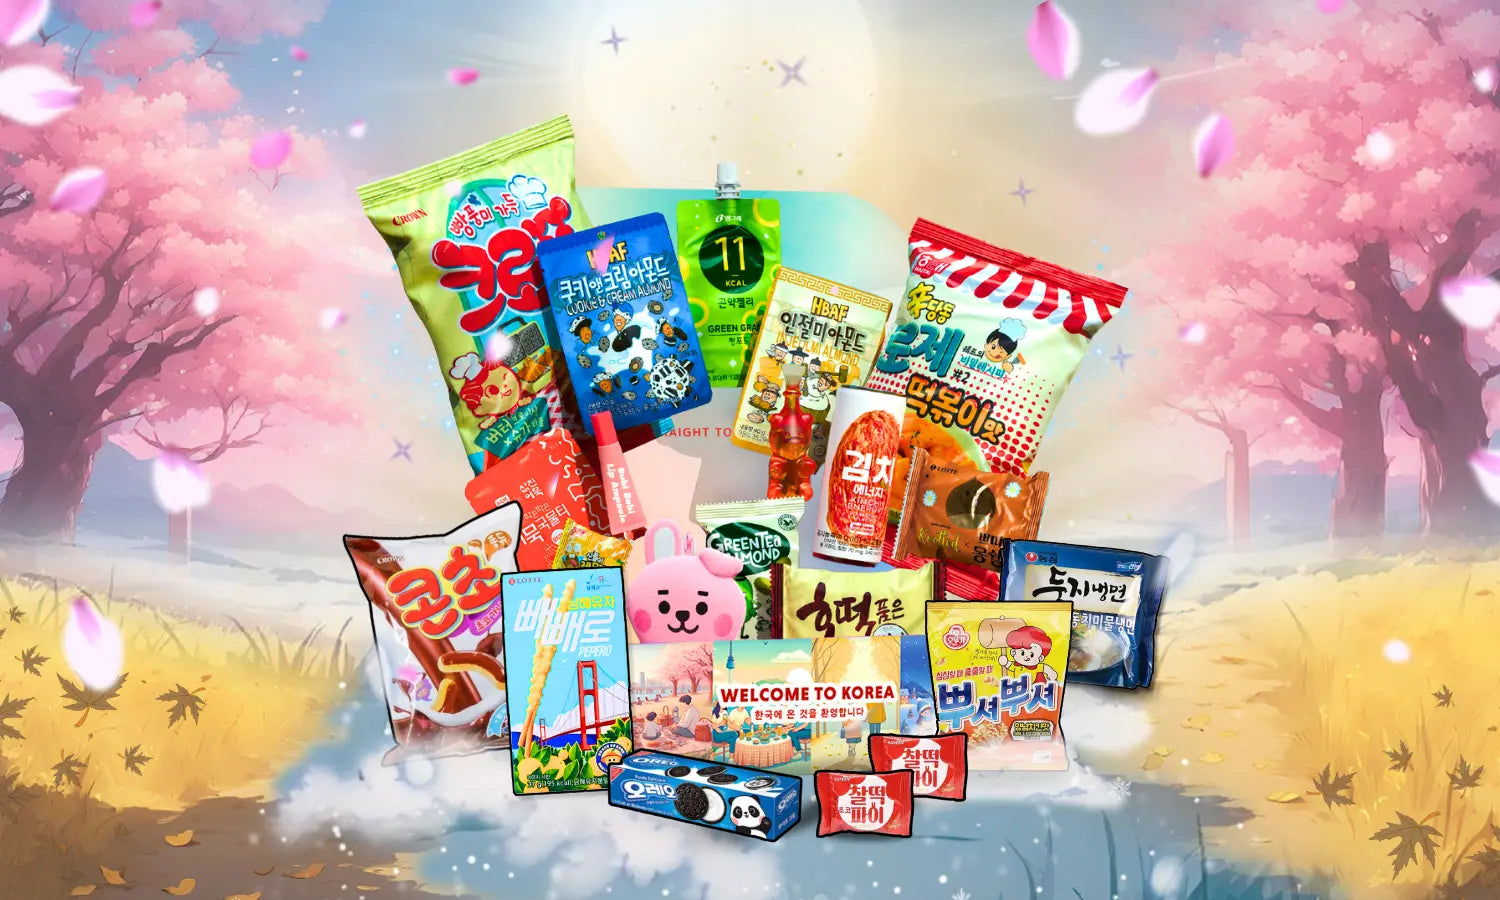 Korean snack box